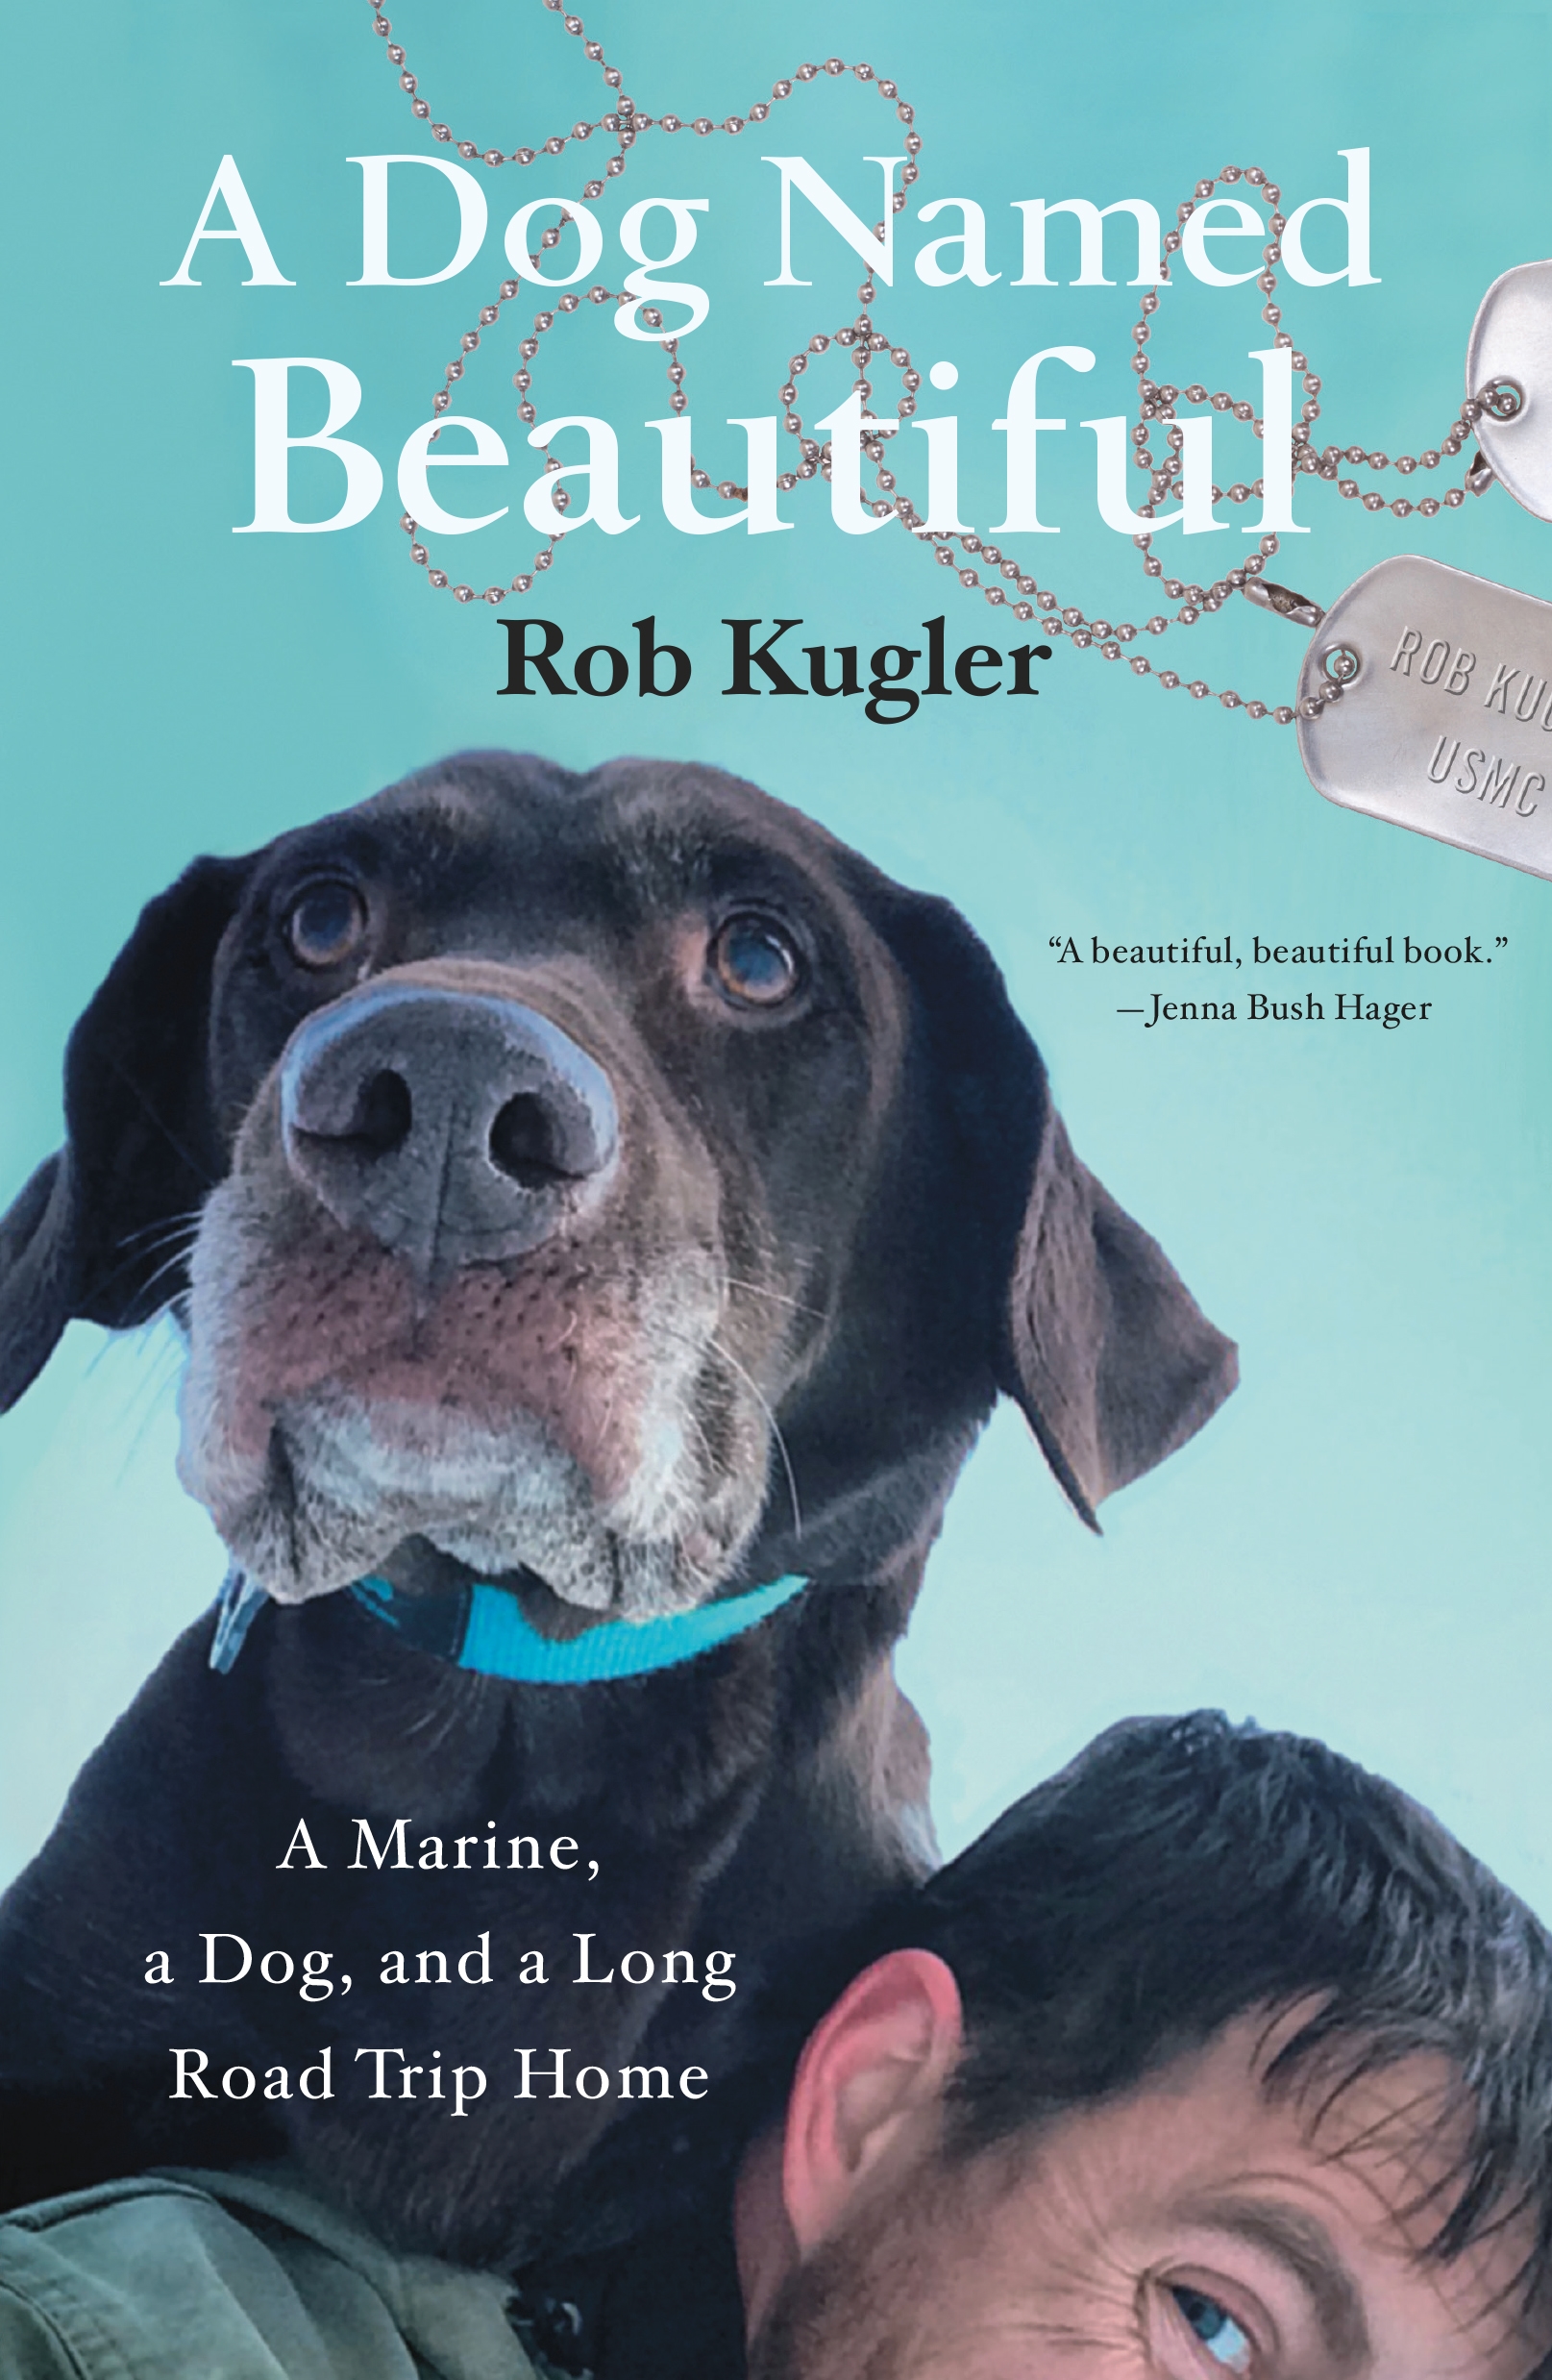 Book “A Dog Named Beautiful” by Rob Kugler — May 5, 2020